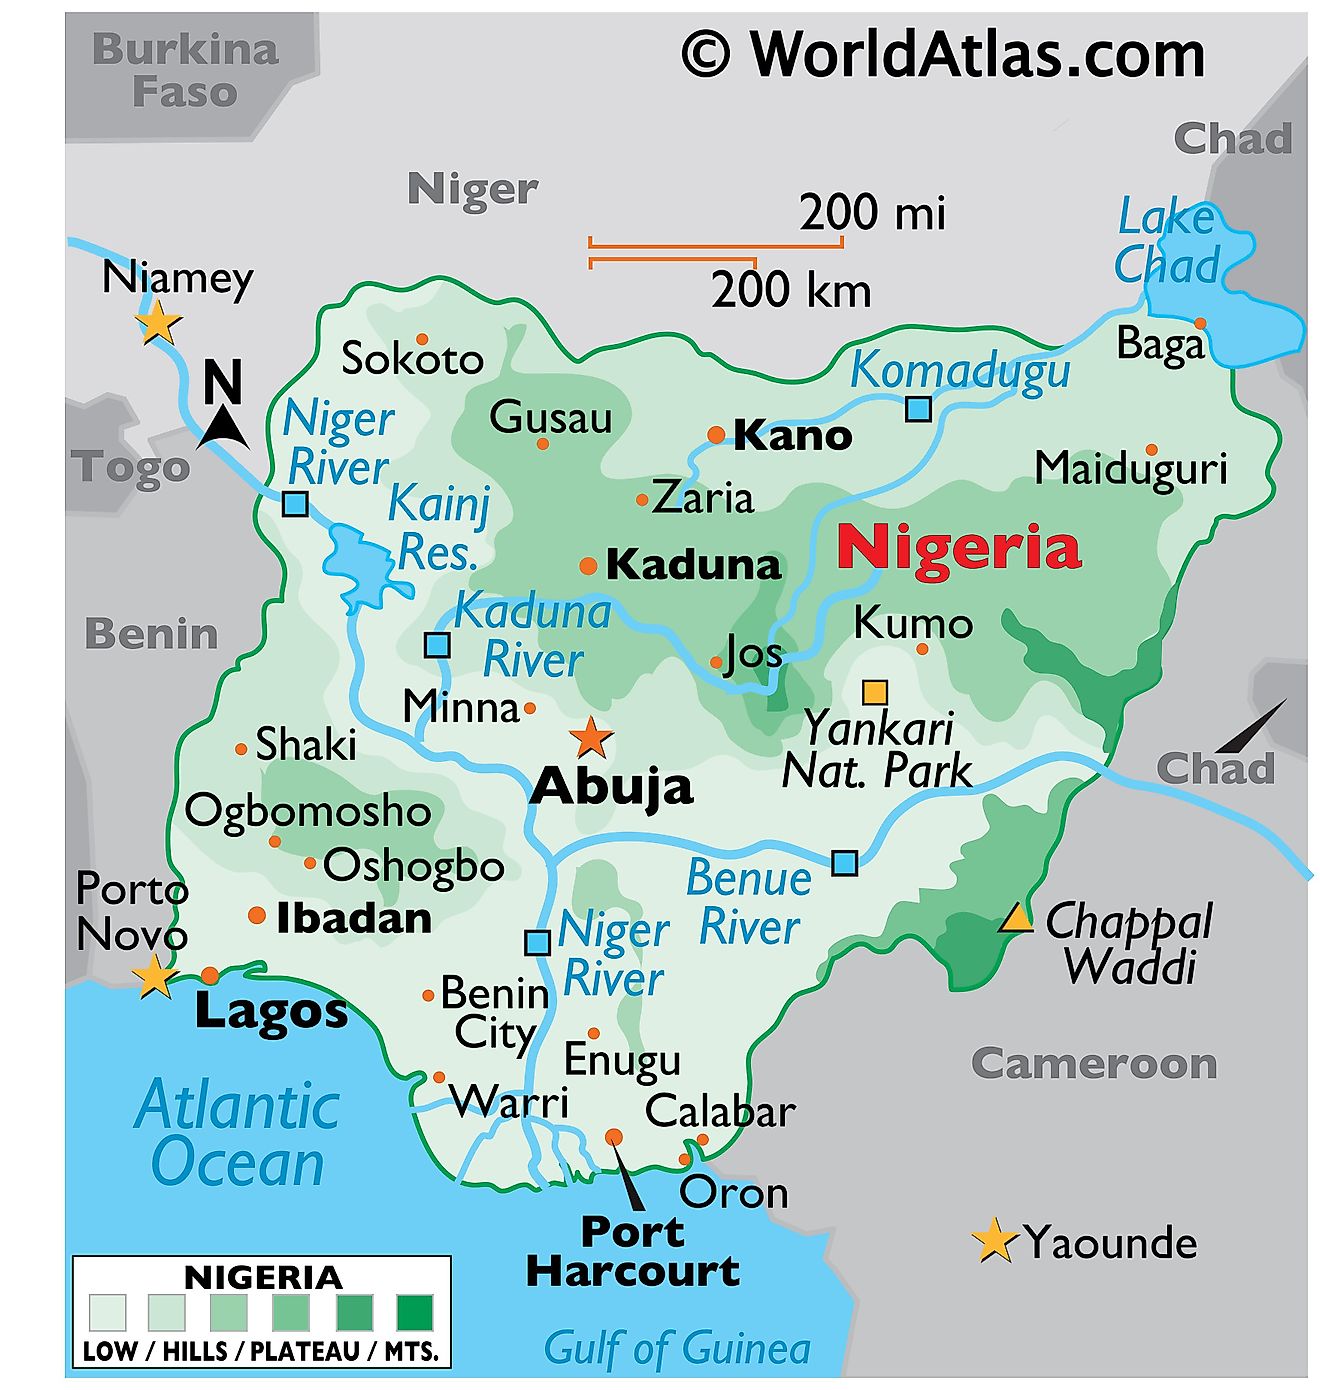 Mapa físico de Nigeria con límites estatales. El mapa muestra características físicas como relieve, pico más alto, ríos principales, lagos, ciudades principales, etc.